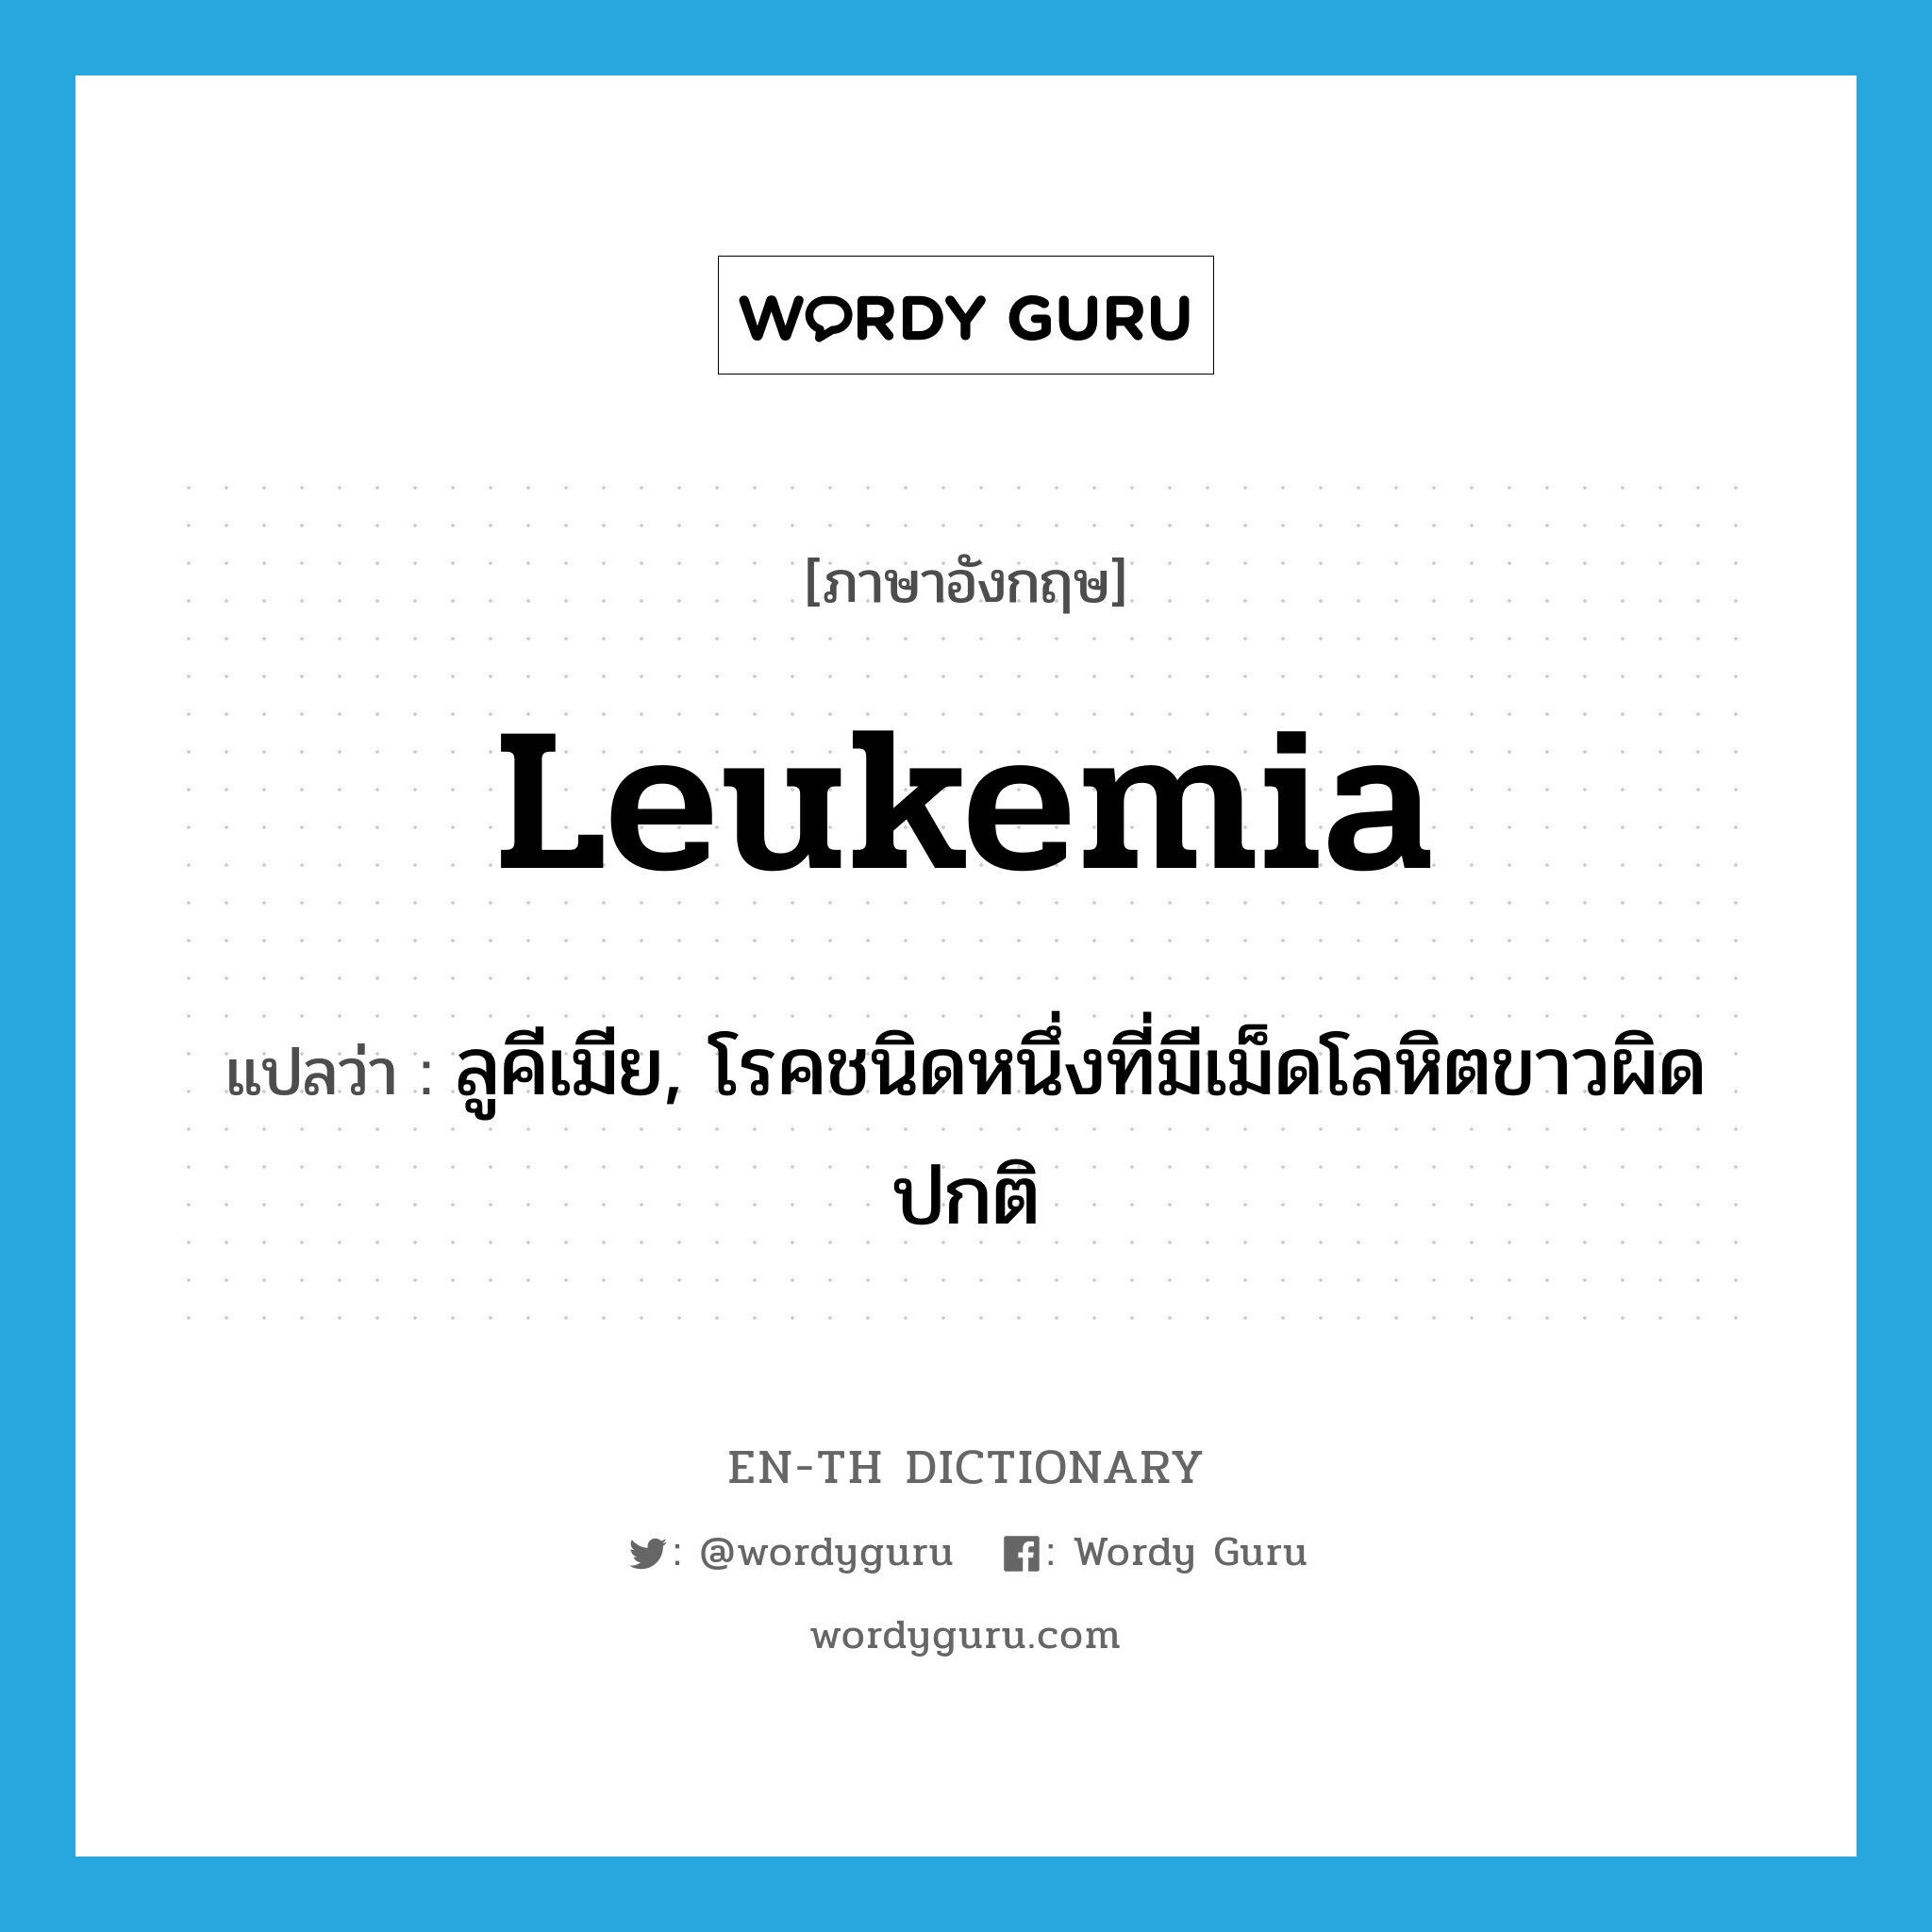 ลูคีเมีย, โรคชนิดหนึ่งที่มีเม็ดโลหิตขาวผิดปกติ ภาษาอังกฤษ?, คำศัพท์ภาษาอังกฤษ ลูคีเมีย, โรคชนิดหนึ่งที่มีเม็ดโลหิตขาวผิดปกติ แปลว่า leukemia ประเภท N หมวด N